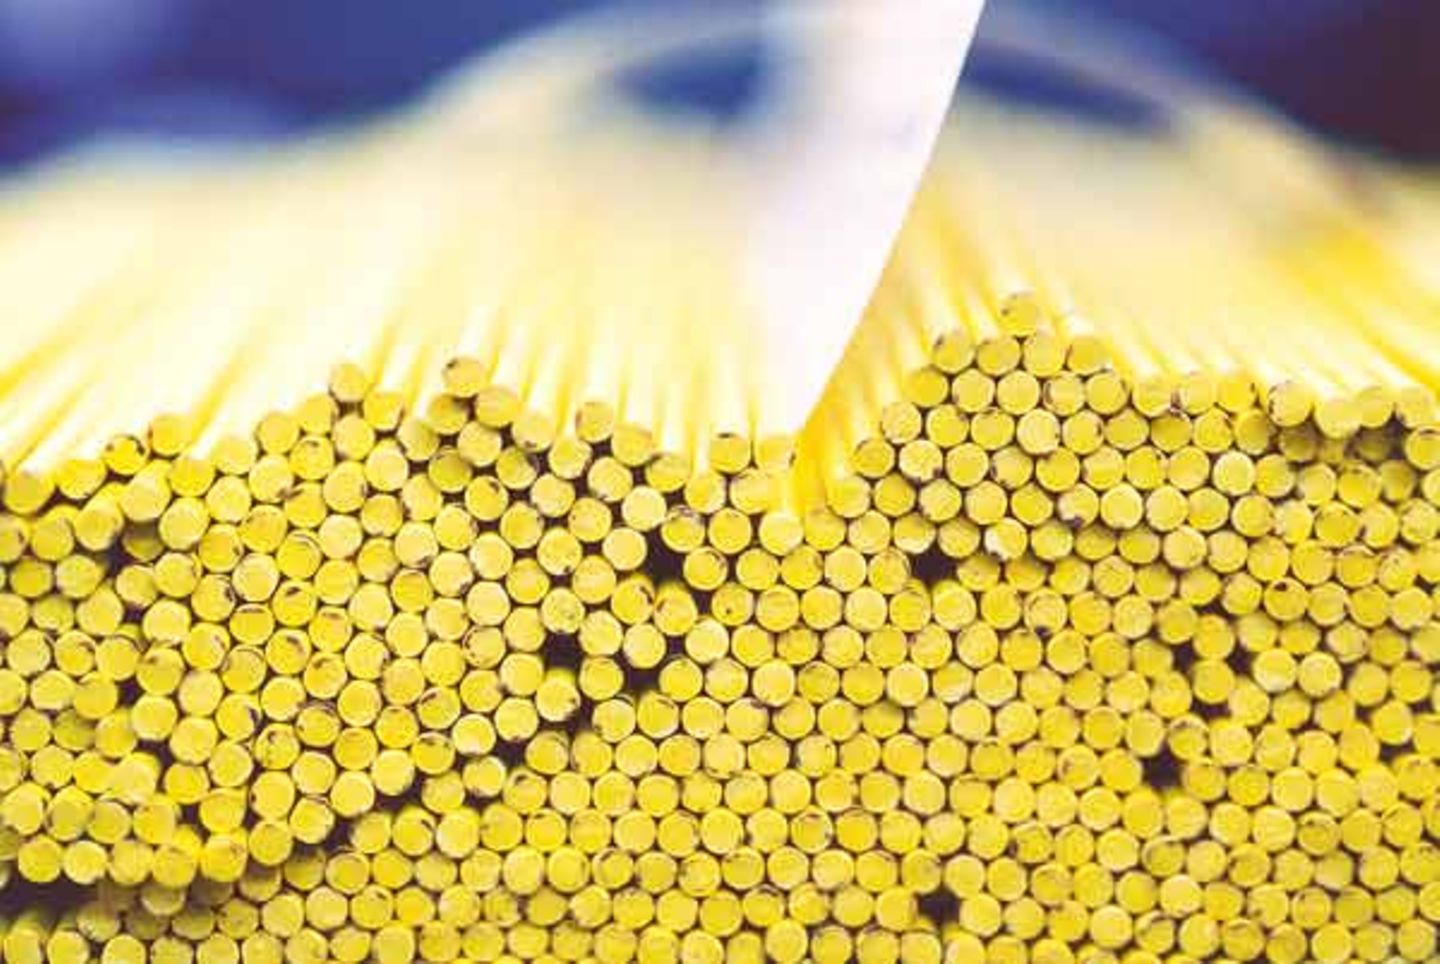 Produktion: 1000 Buntstiftminen fertigt eine Maschine in der Minute - da sammelt sich einiges an